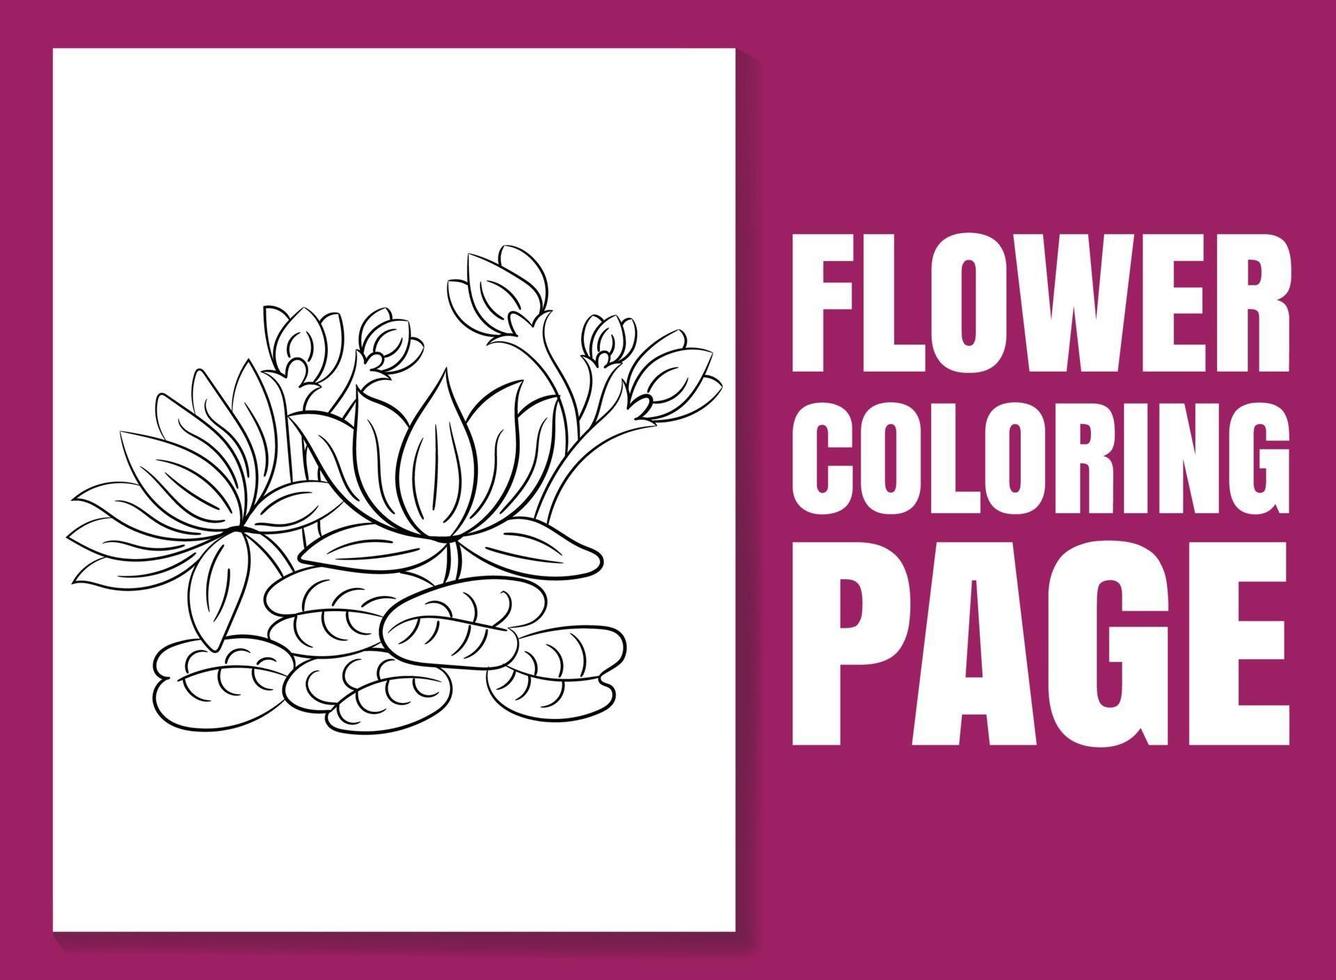 coloriage de fleurs. page de livre de coloriage pour adultes et enfants vecteur